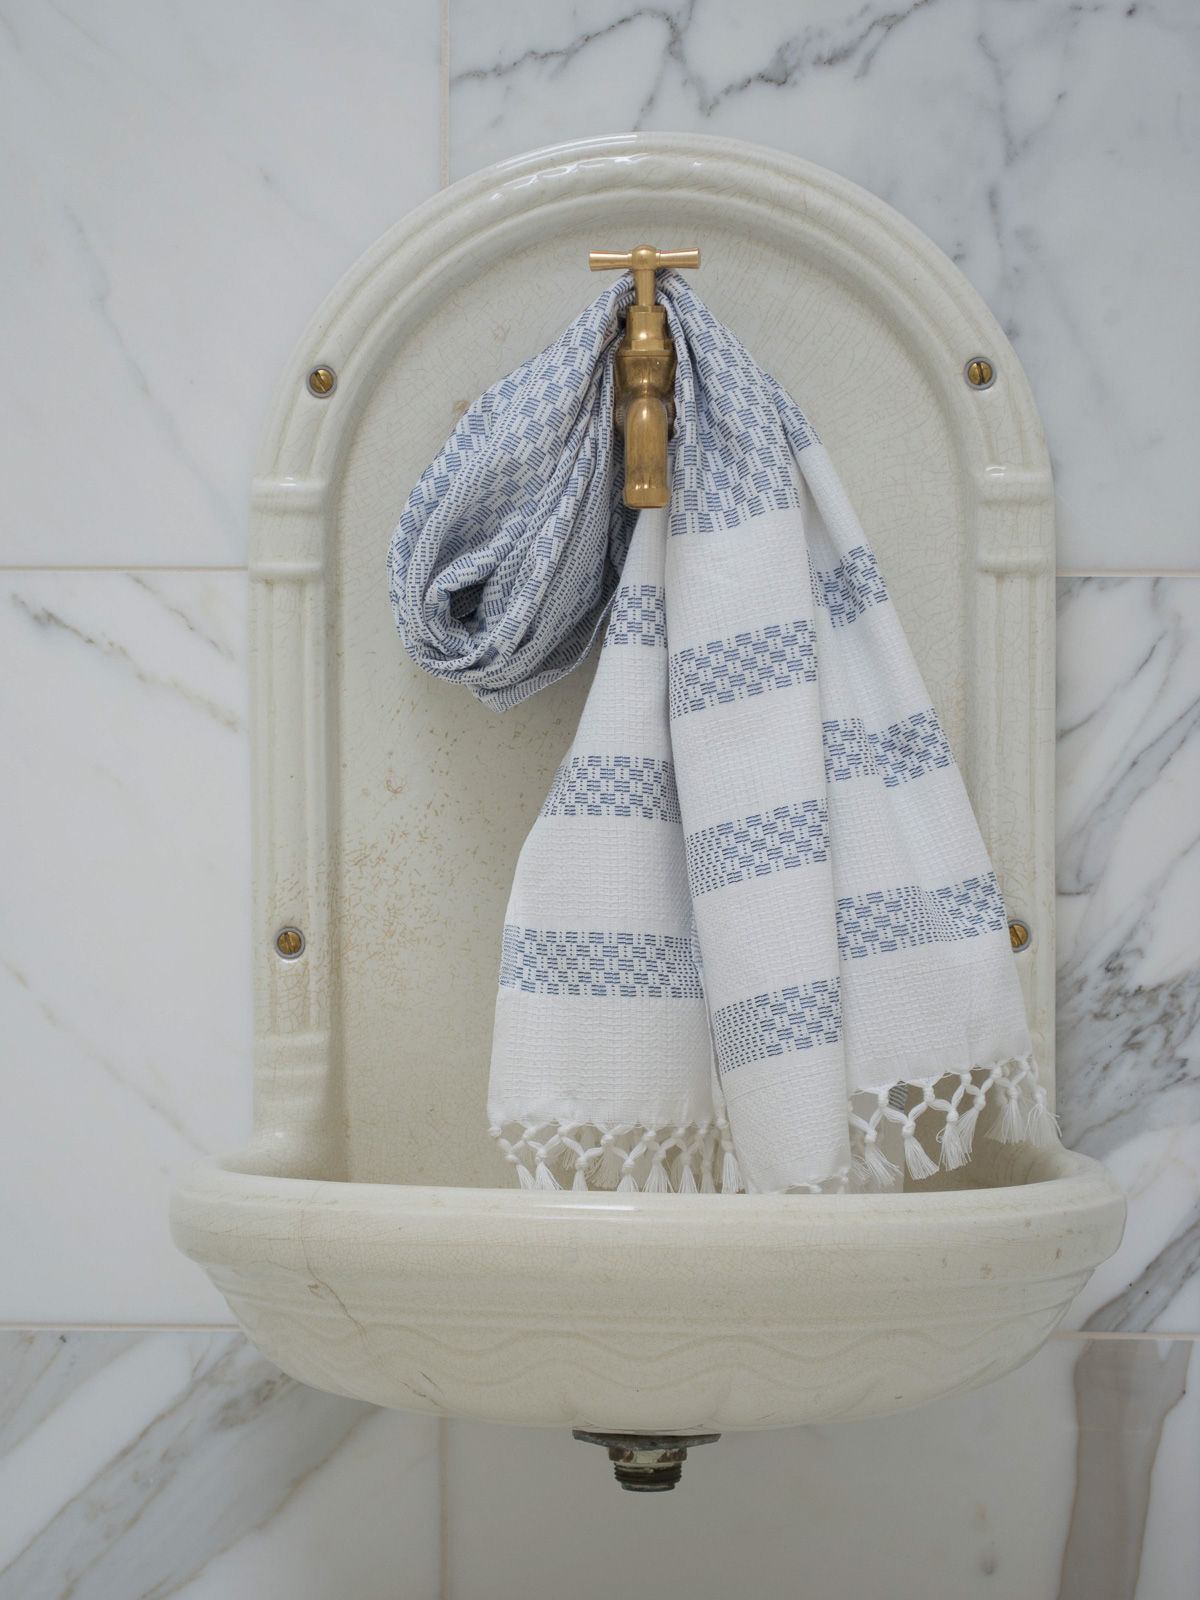 handdoek grijsblauw